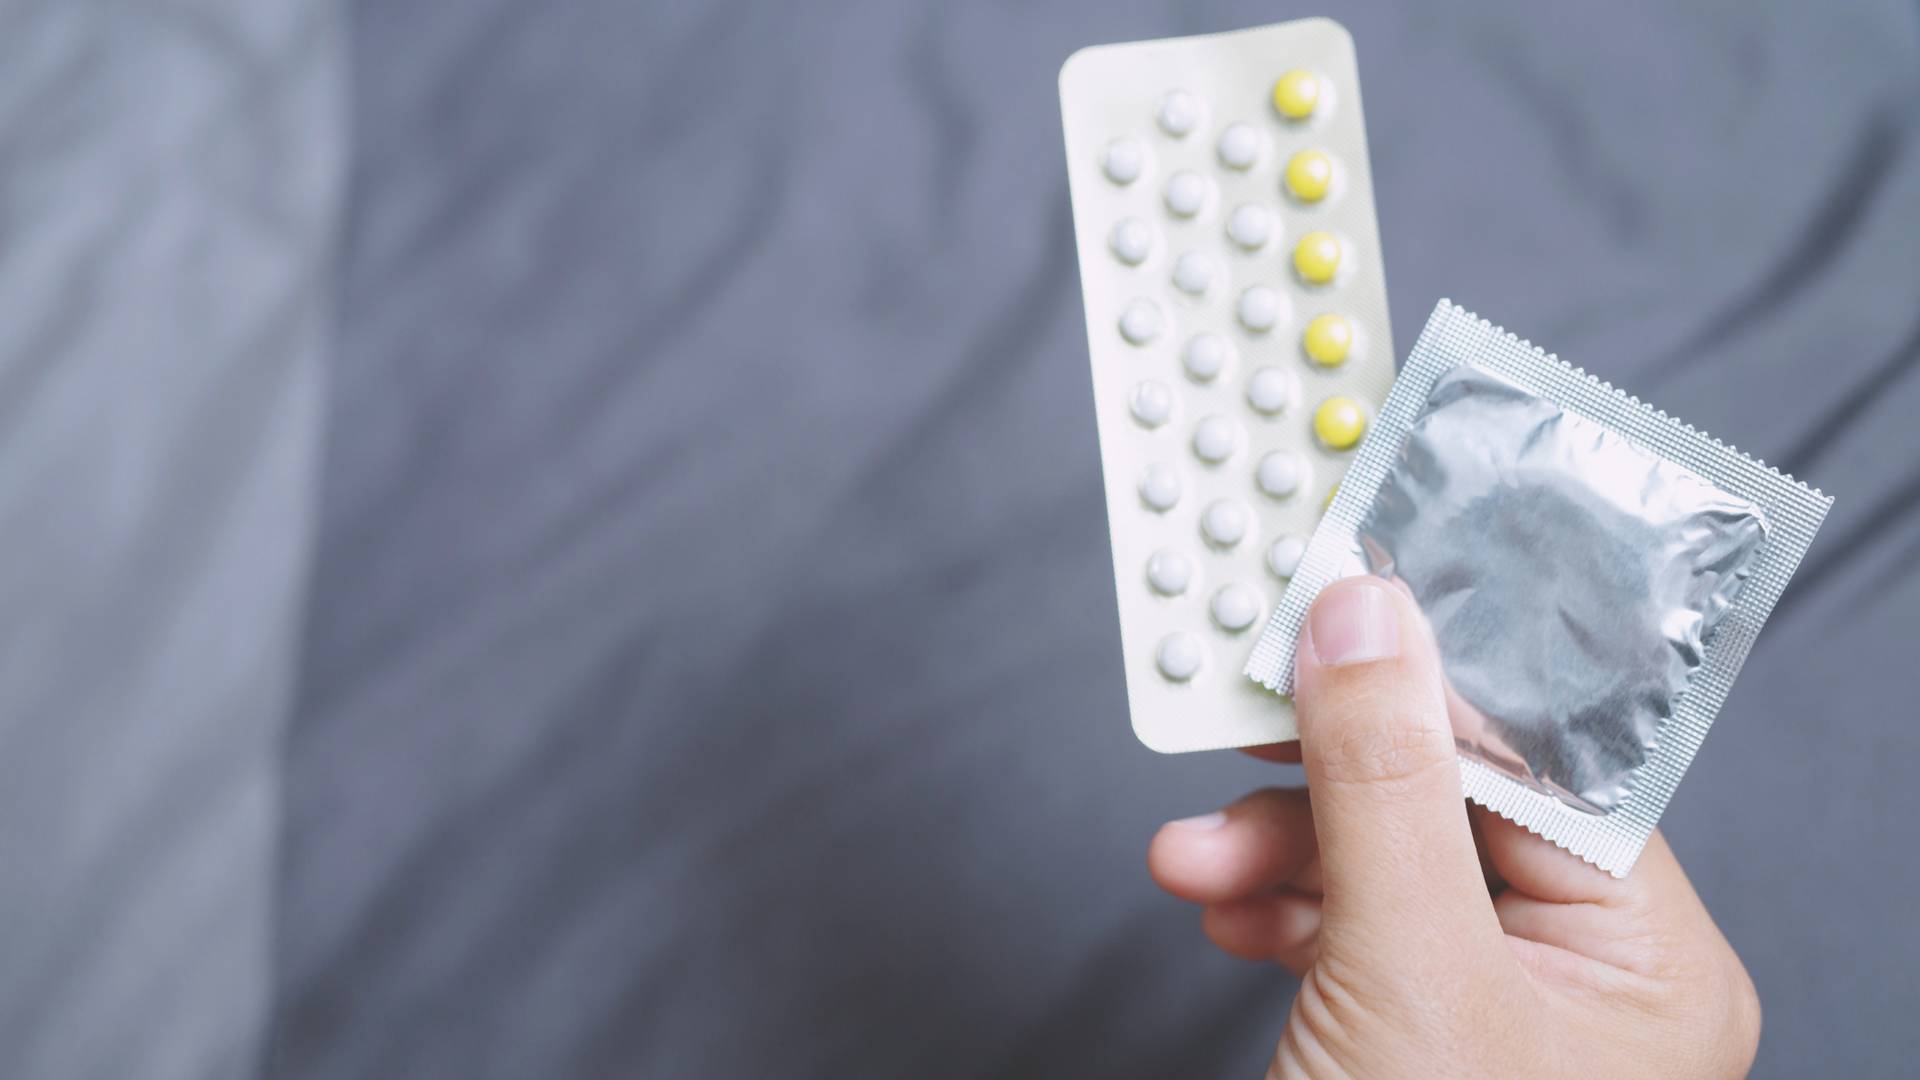 Darmowe prezerwatywy i pigułki — Tajlandia walczy z chorobami i niechcianymi ciążami